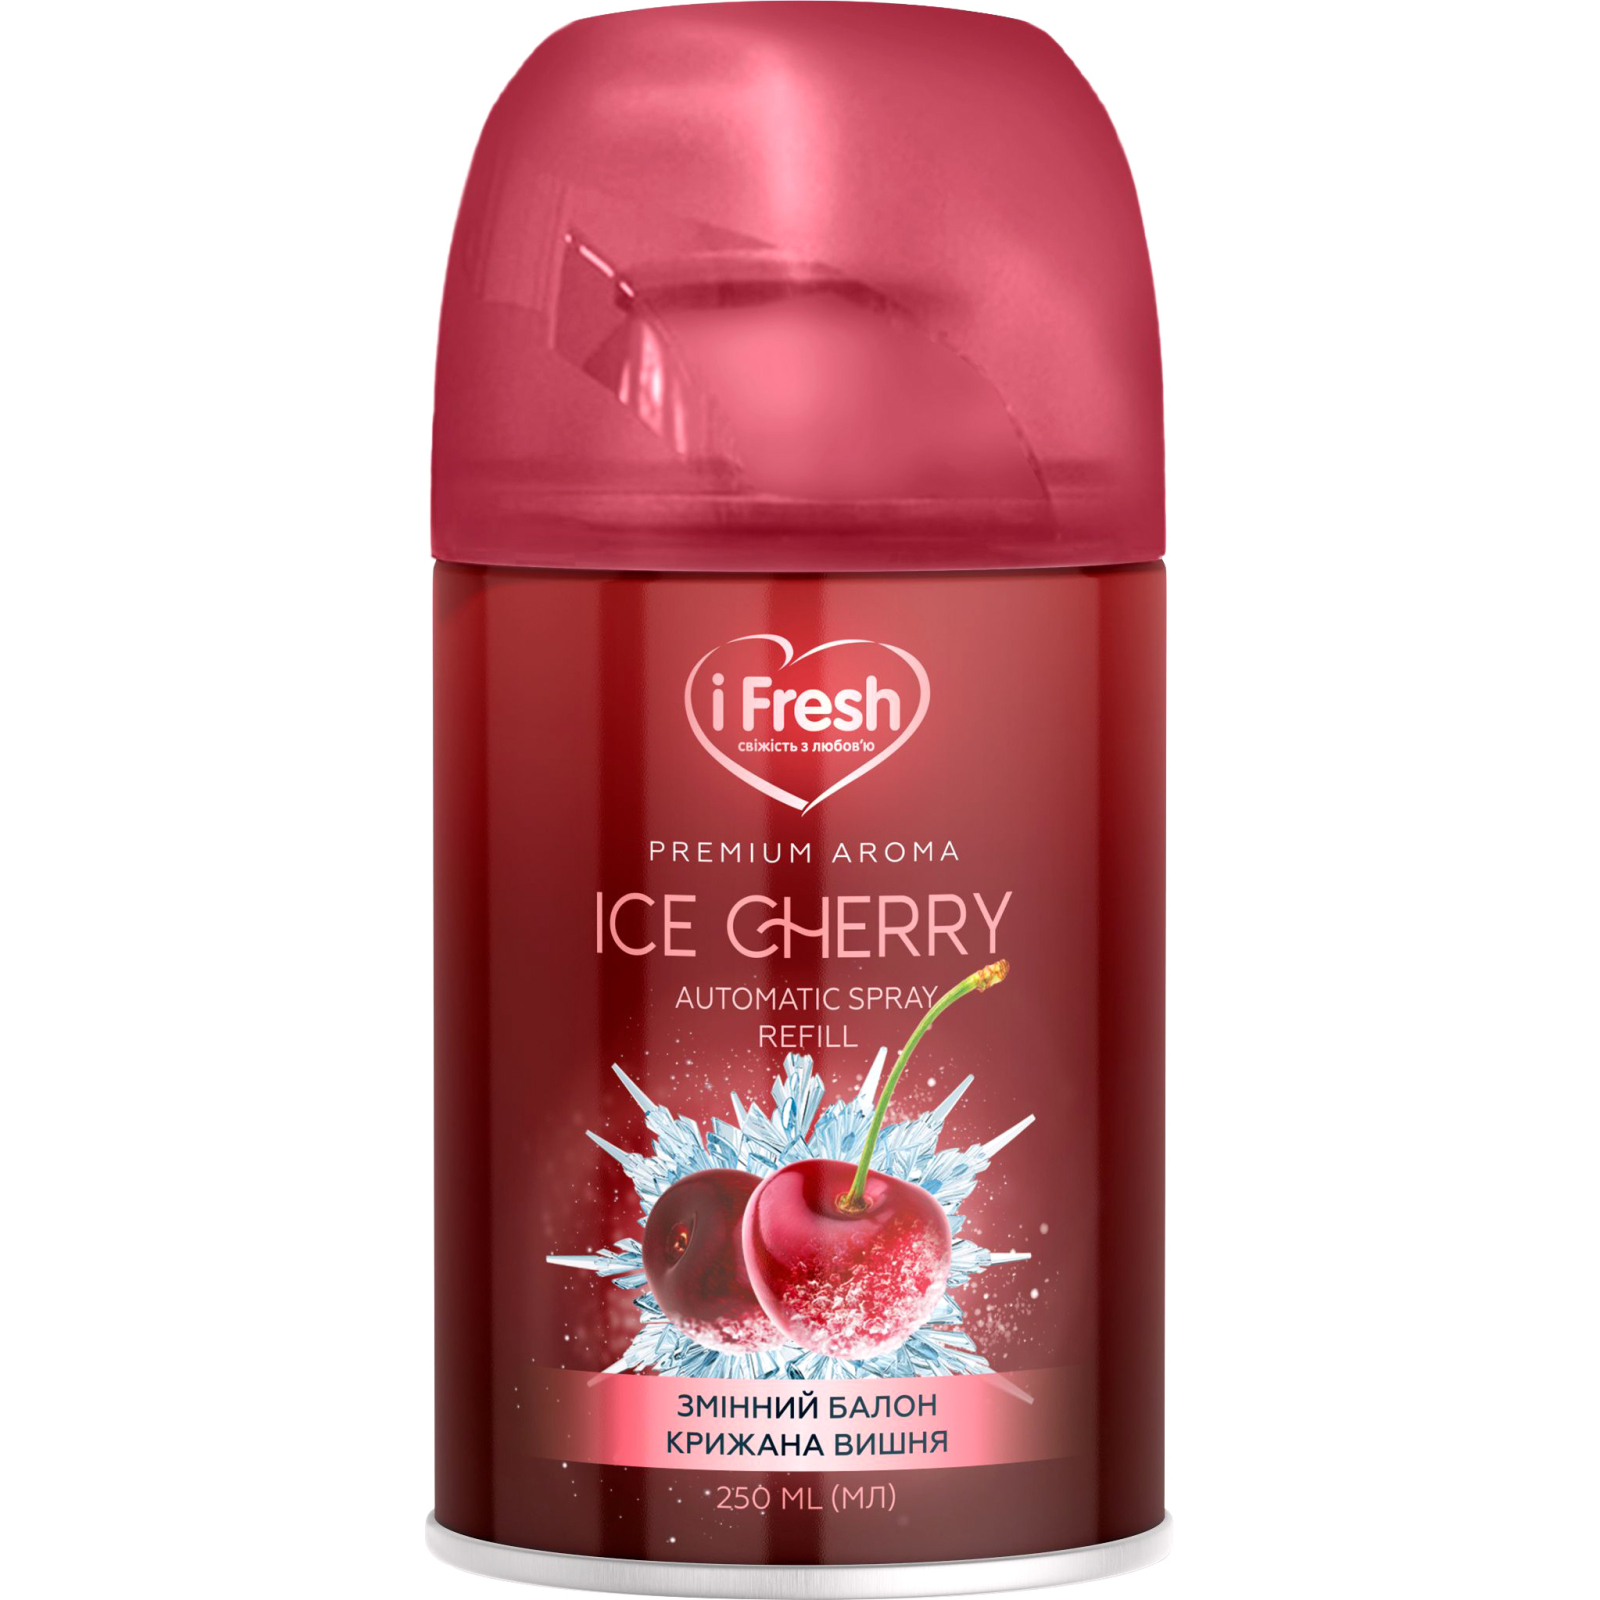 Освежитель воздуха iFresh Premium Aroma Ice Cherry Сменный баллон 250 мл (4820268100146)